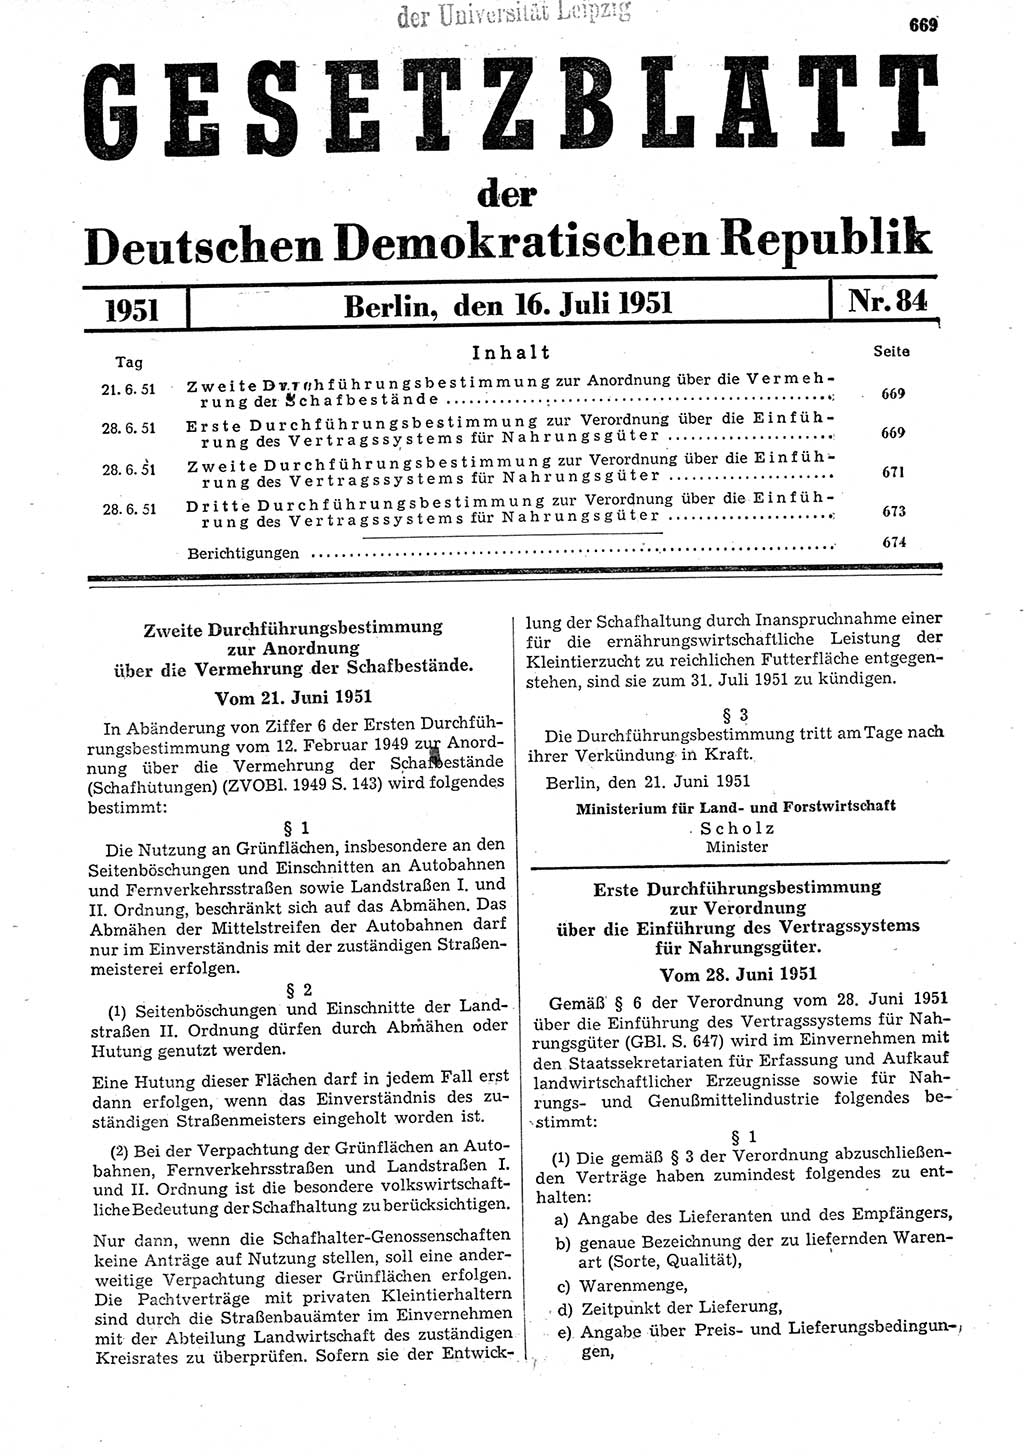 Gesetzblatt (GBl.) der Deutschen Demokratischen Republik (DDR) 1951, Seite 669 (GBl. DDR 1951, S. 669)